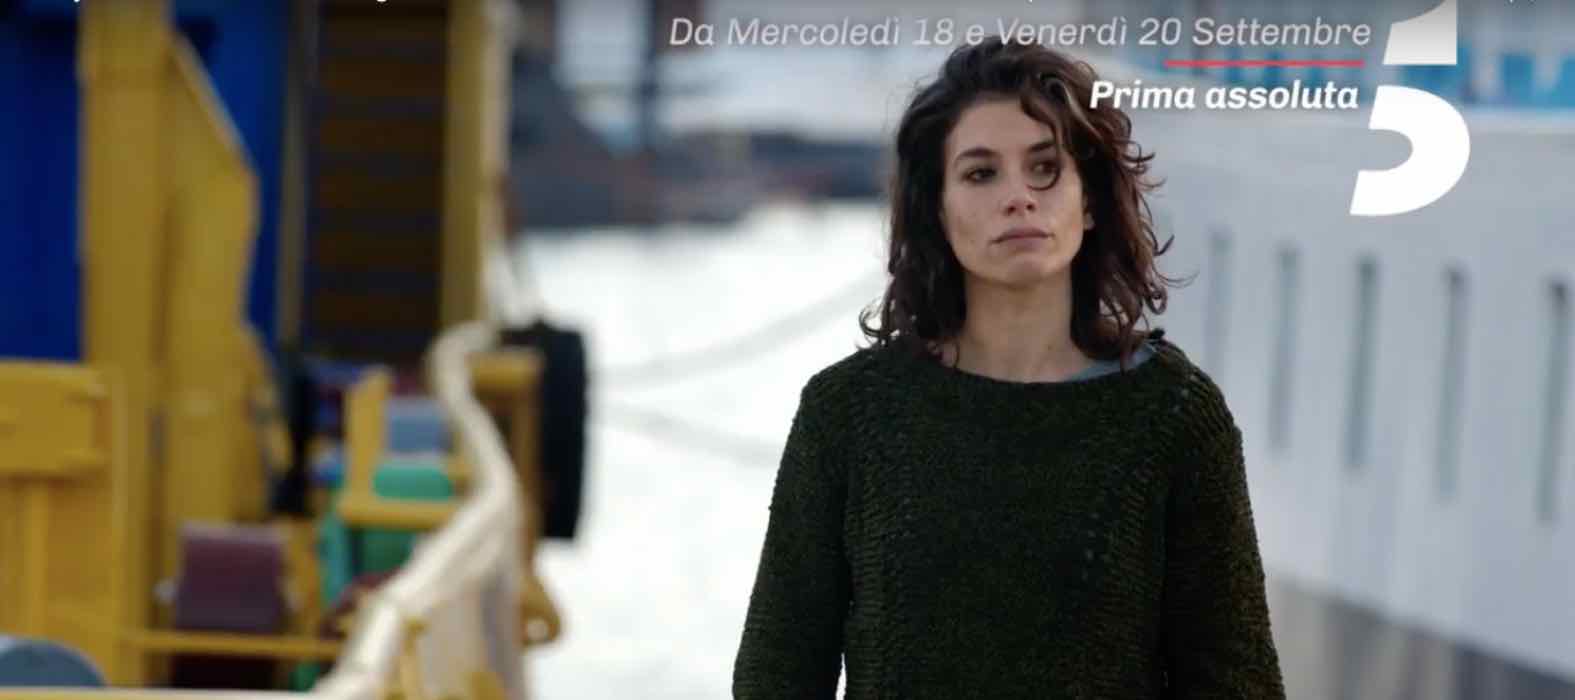 Rosy Abate 2 | Giulia Michelini | trama, trailer, cast e anticipazioni